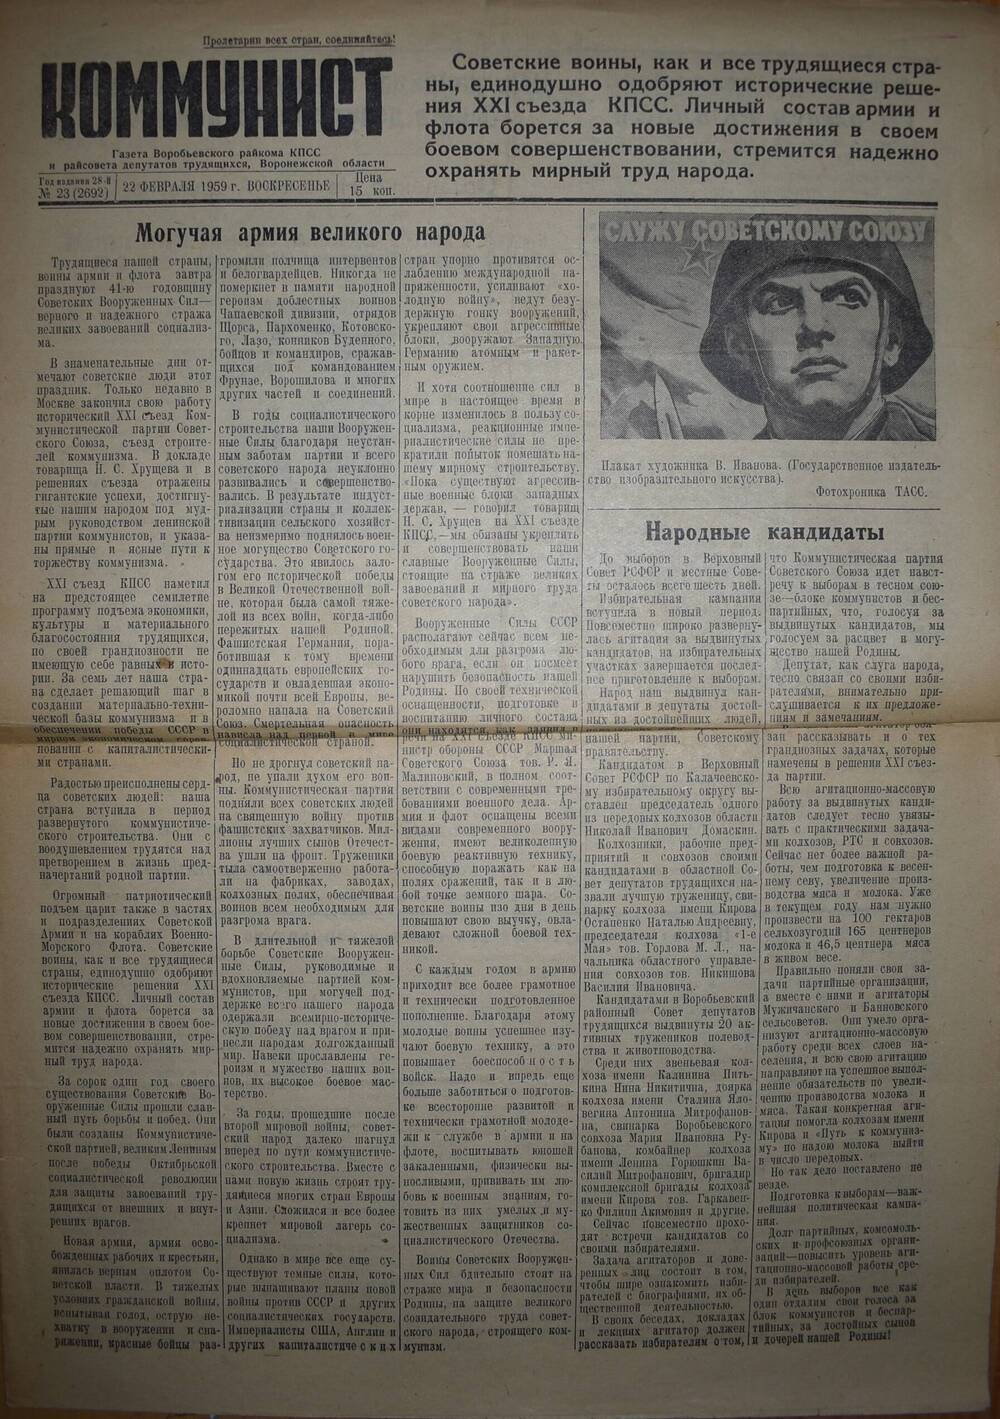 Газета Коммунист Воробьевского РК КПСС от 22.02.1959 г.